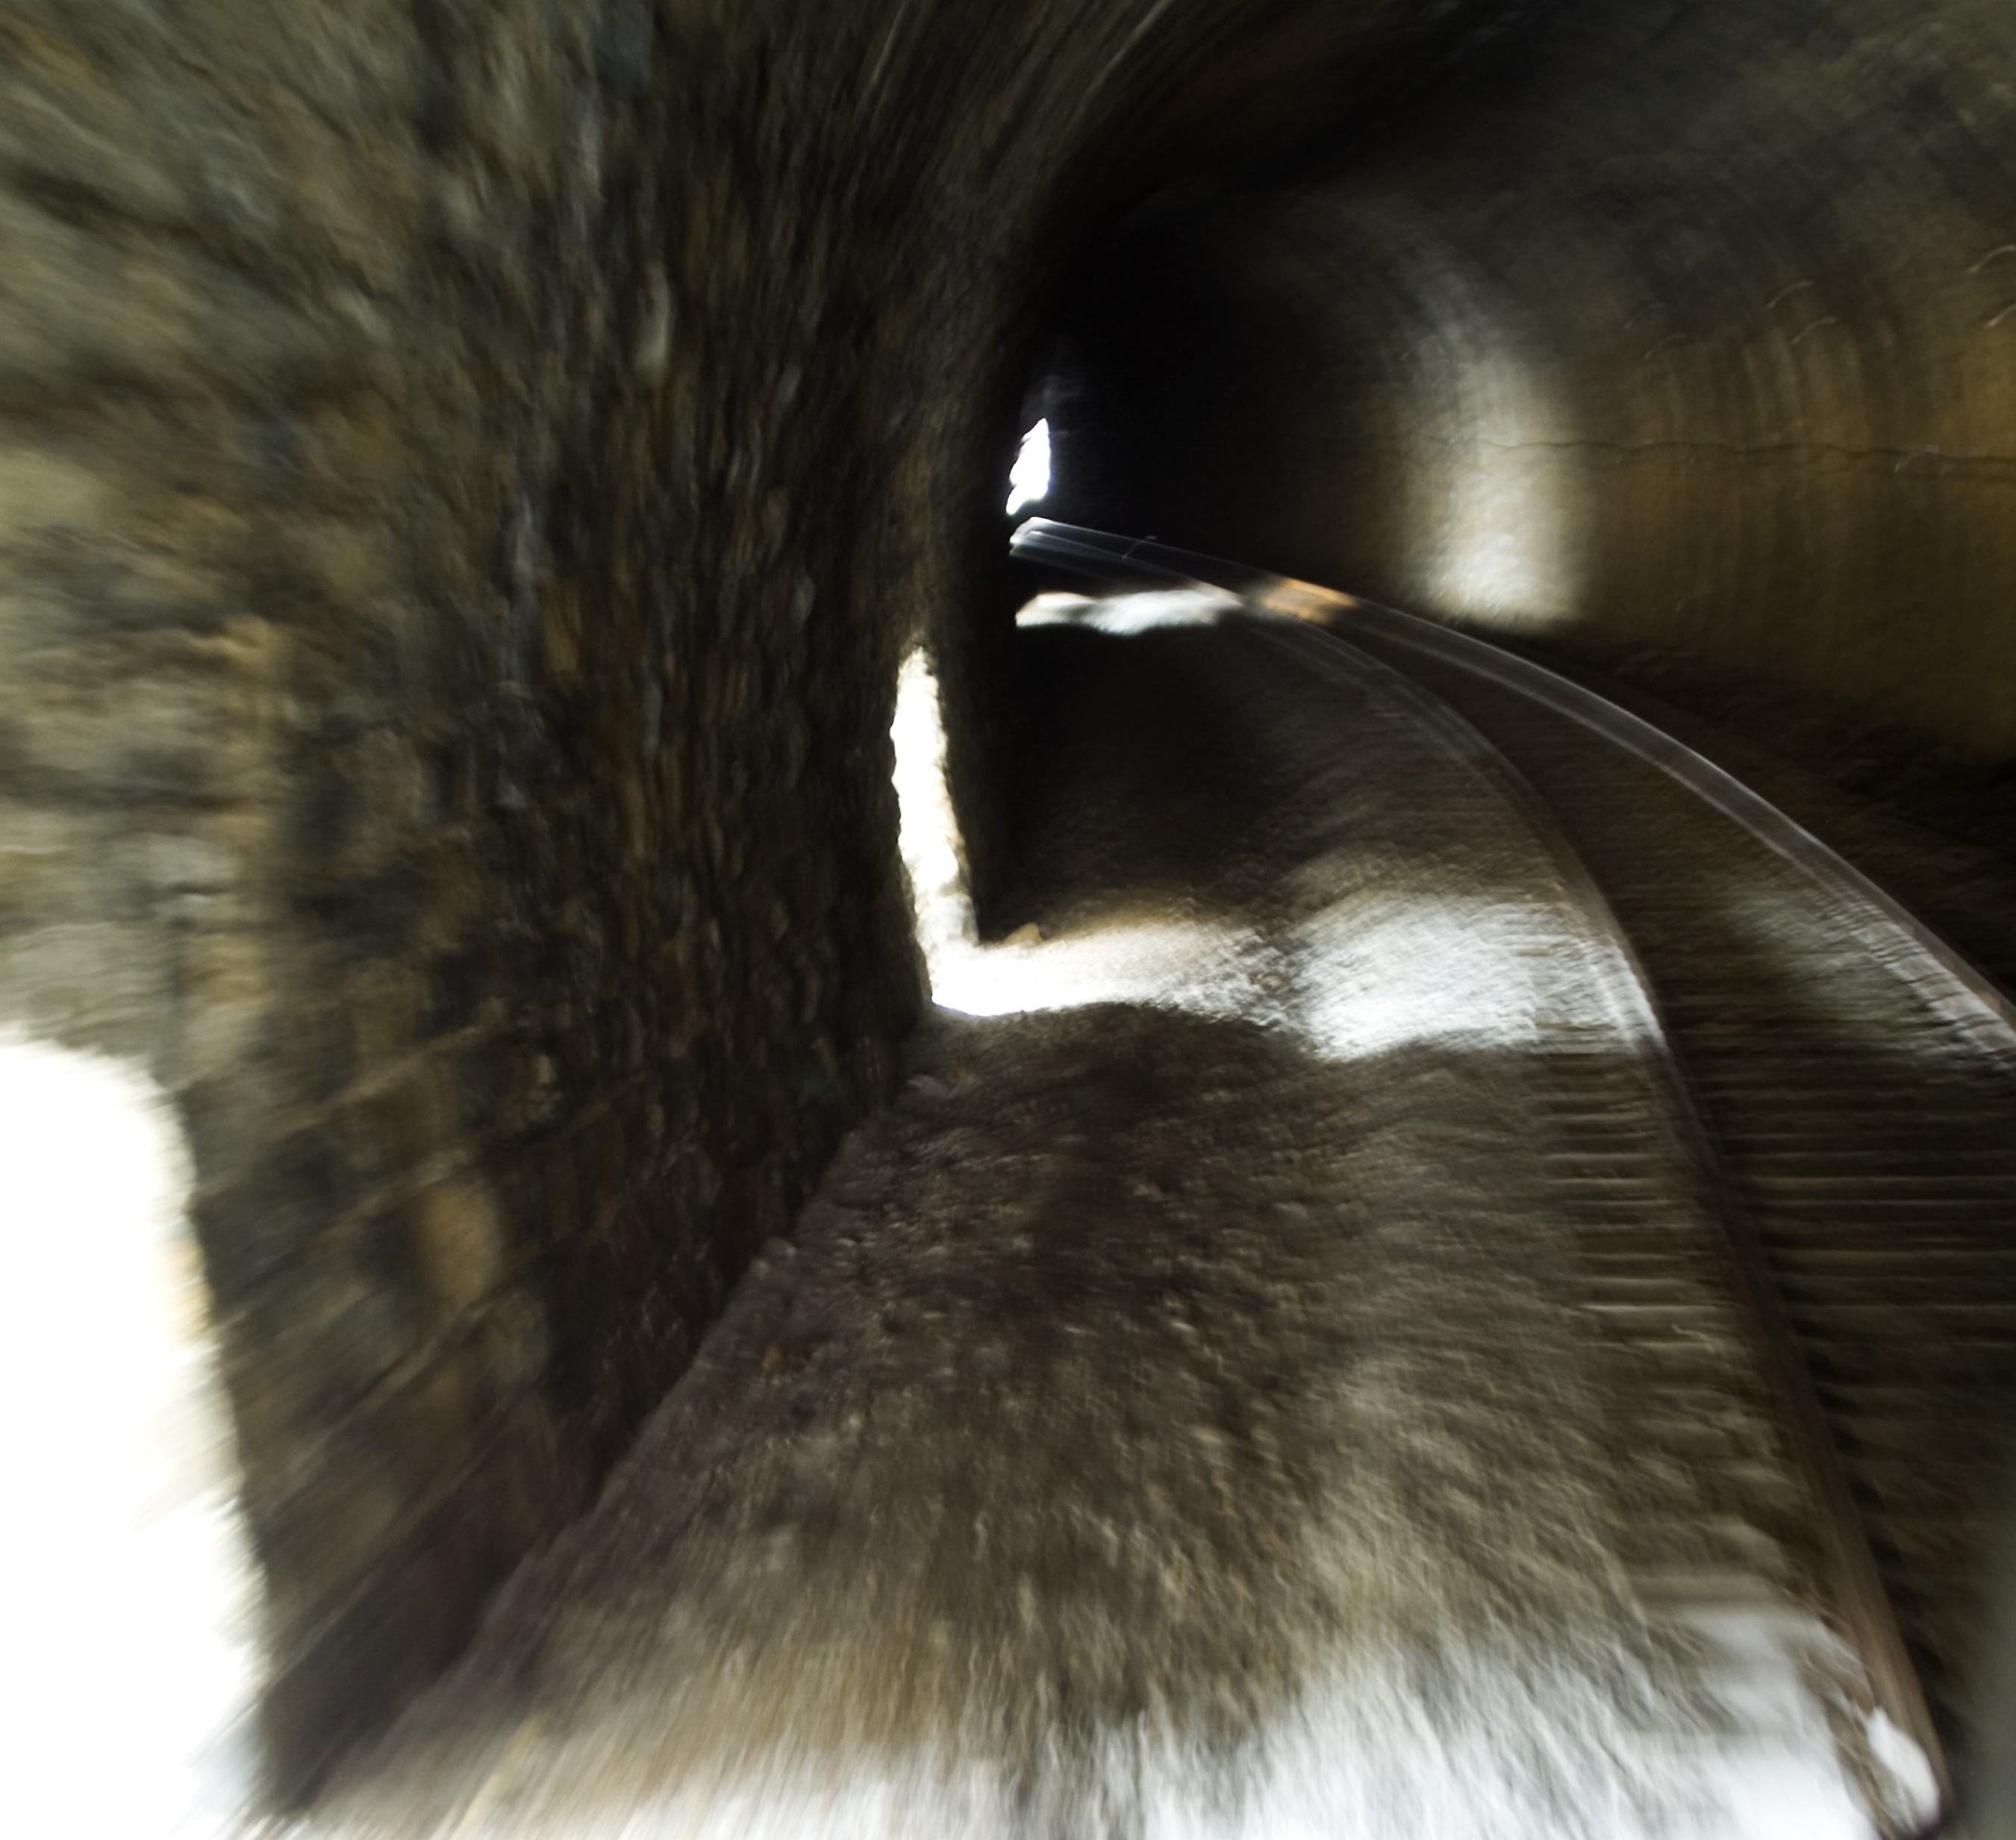 Тайны подземелий: Секретные туннели связывают целые континенты?